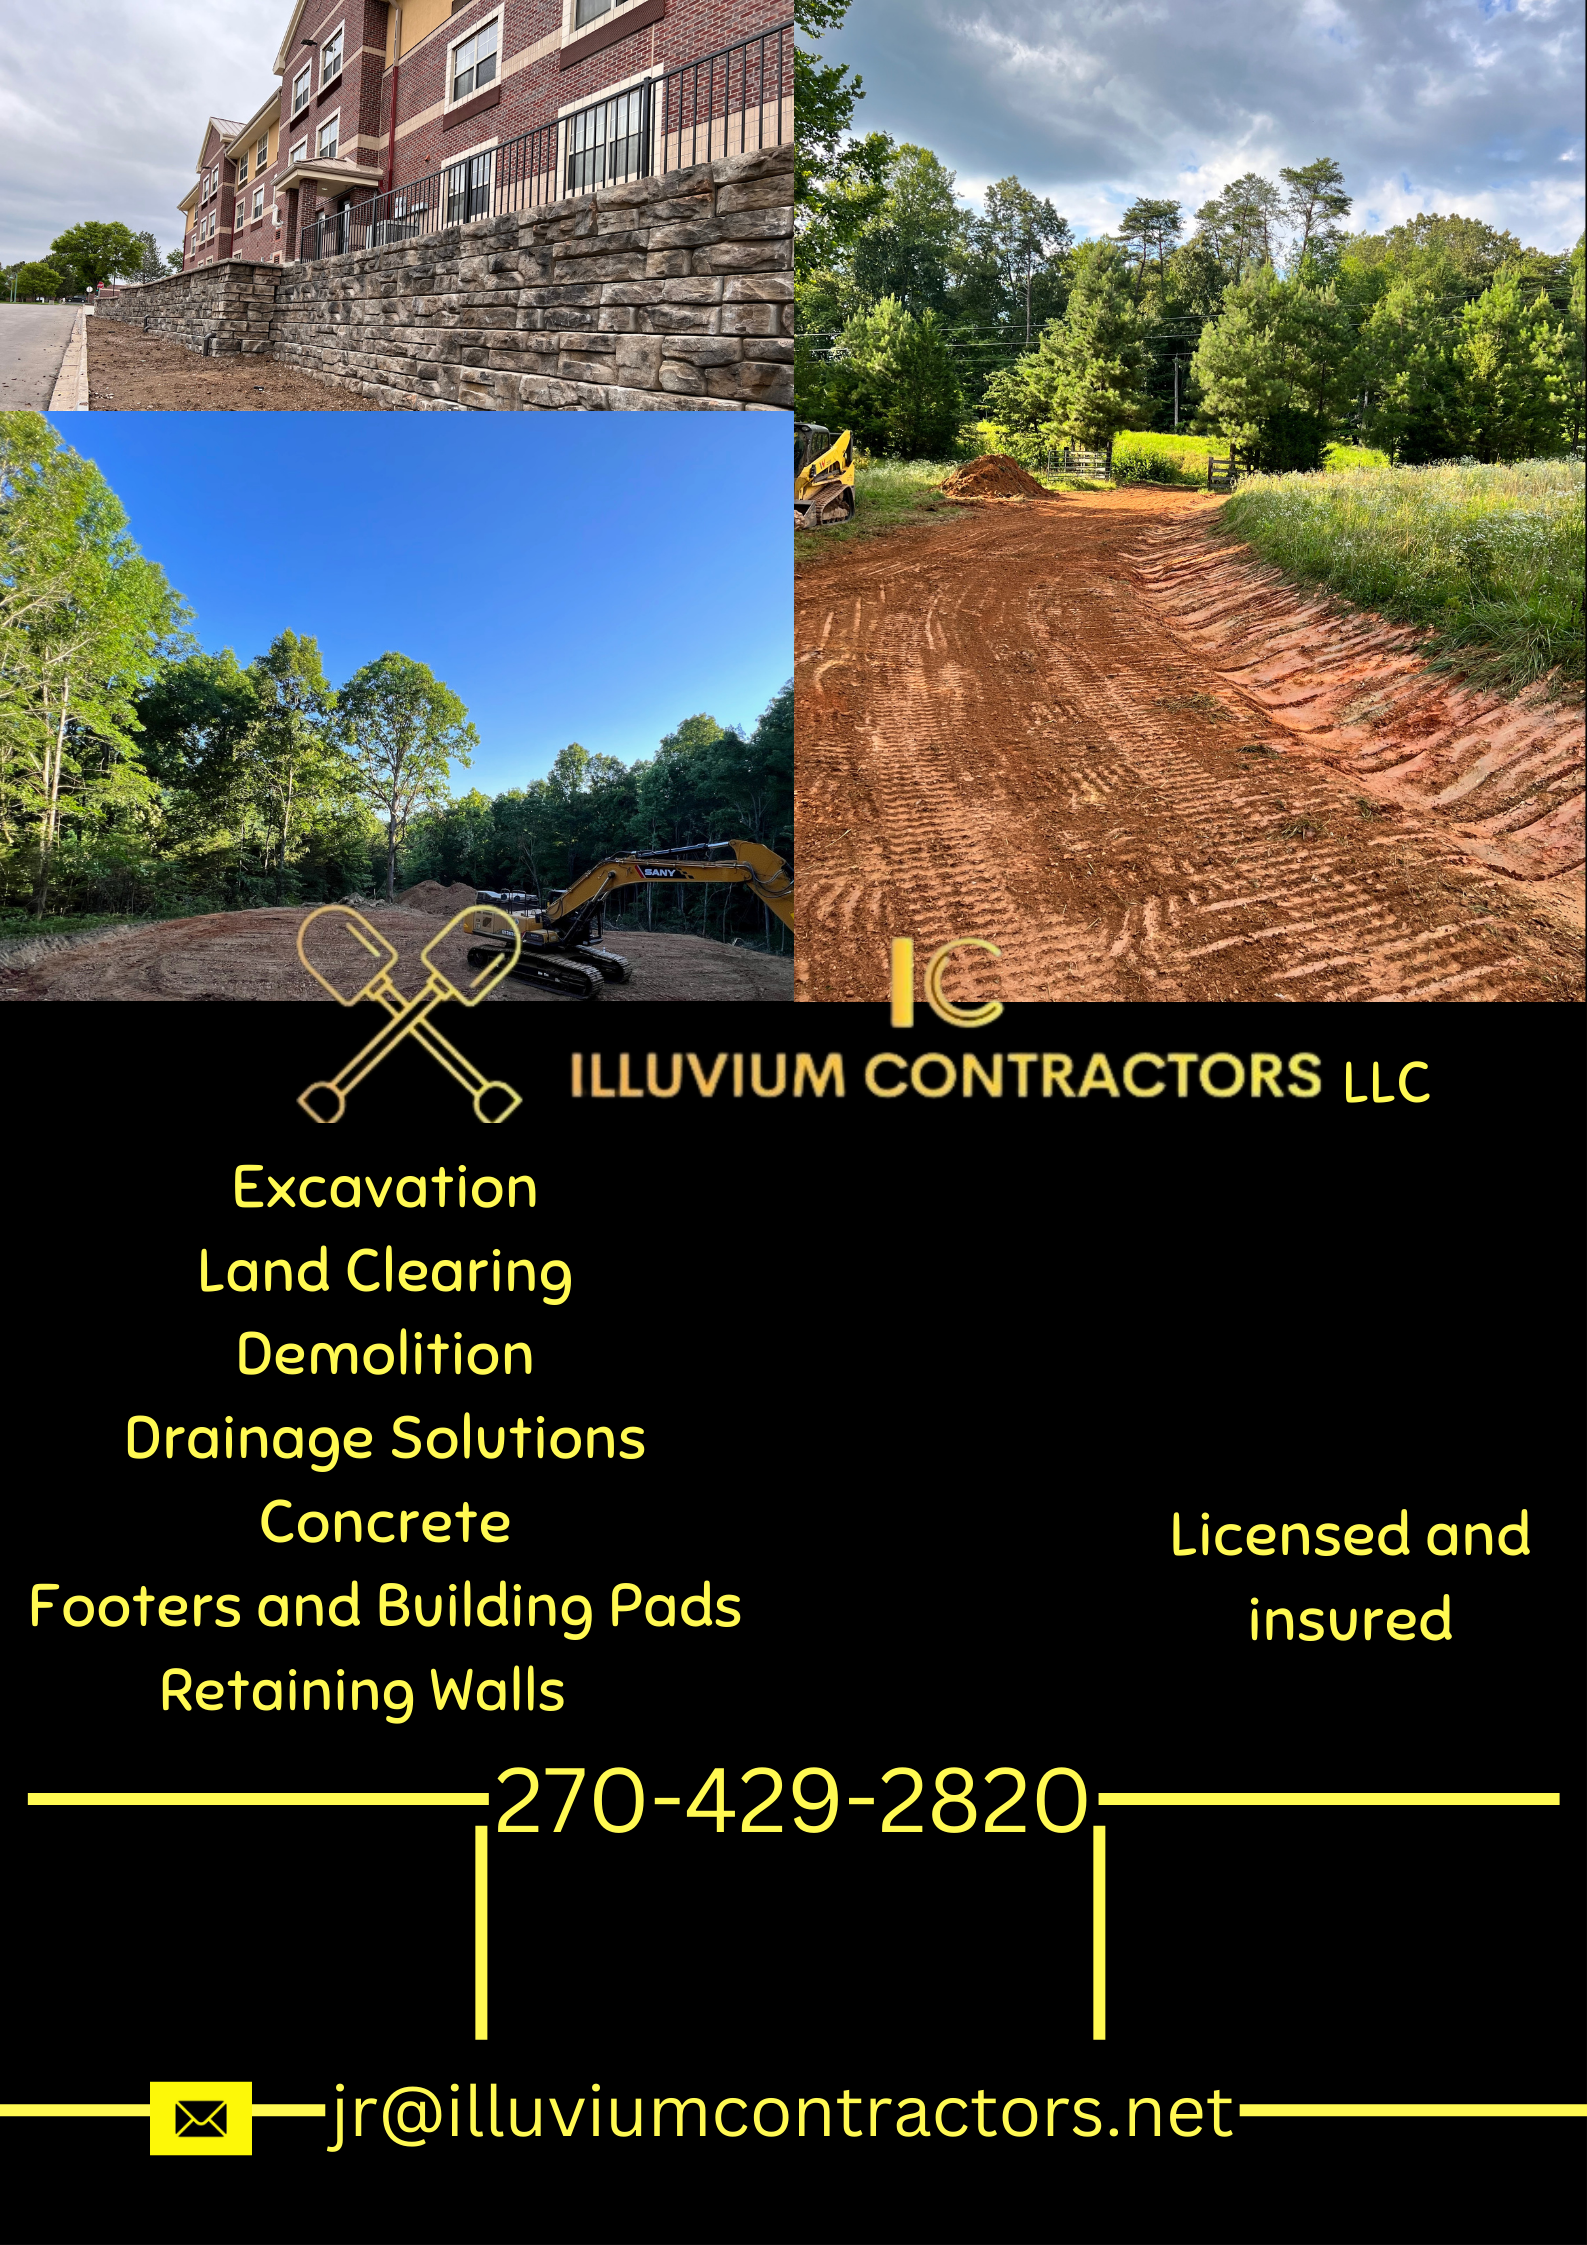 Illuvium Contractors LLC